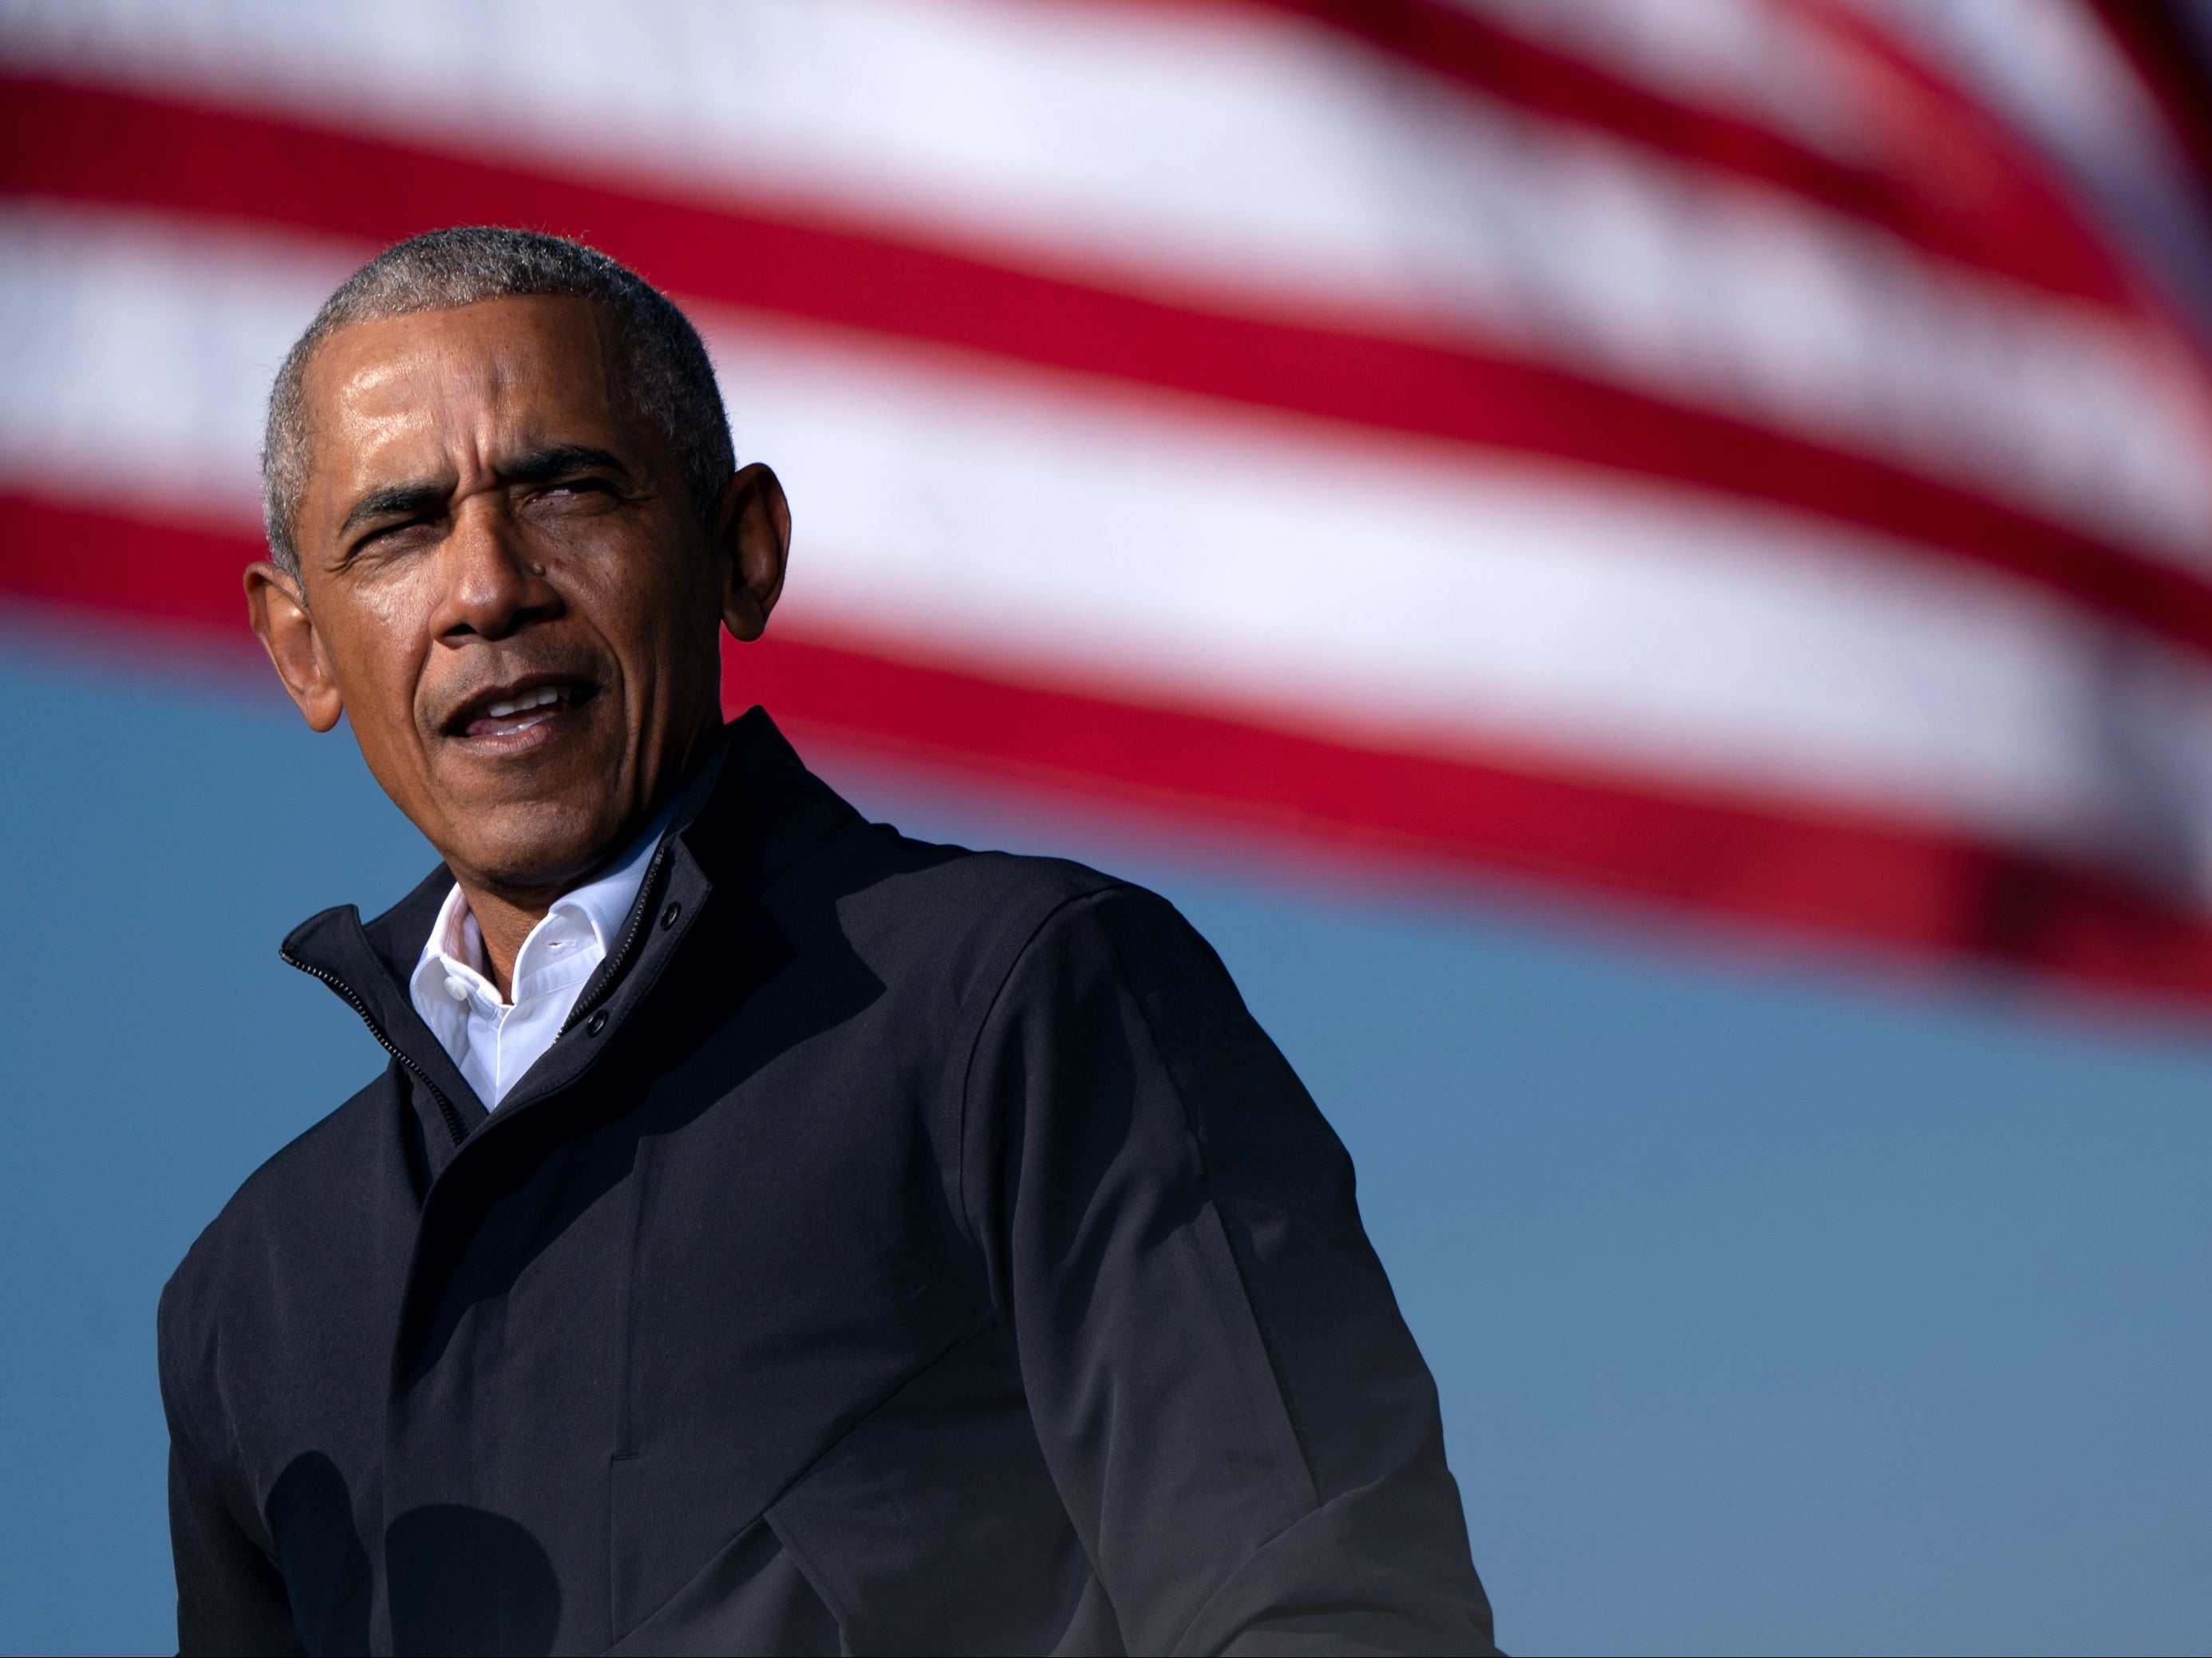 El presidente Barack Obama ha publicado la primera entrega de sus memorias presidenciales